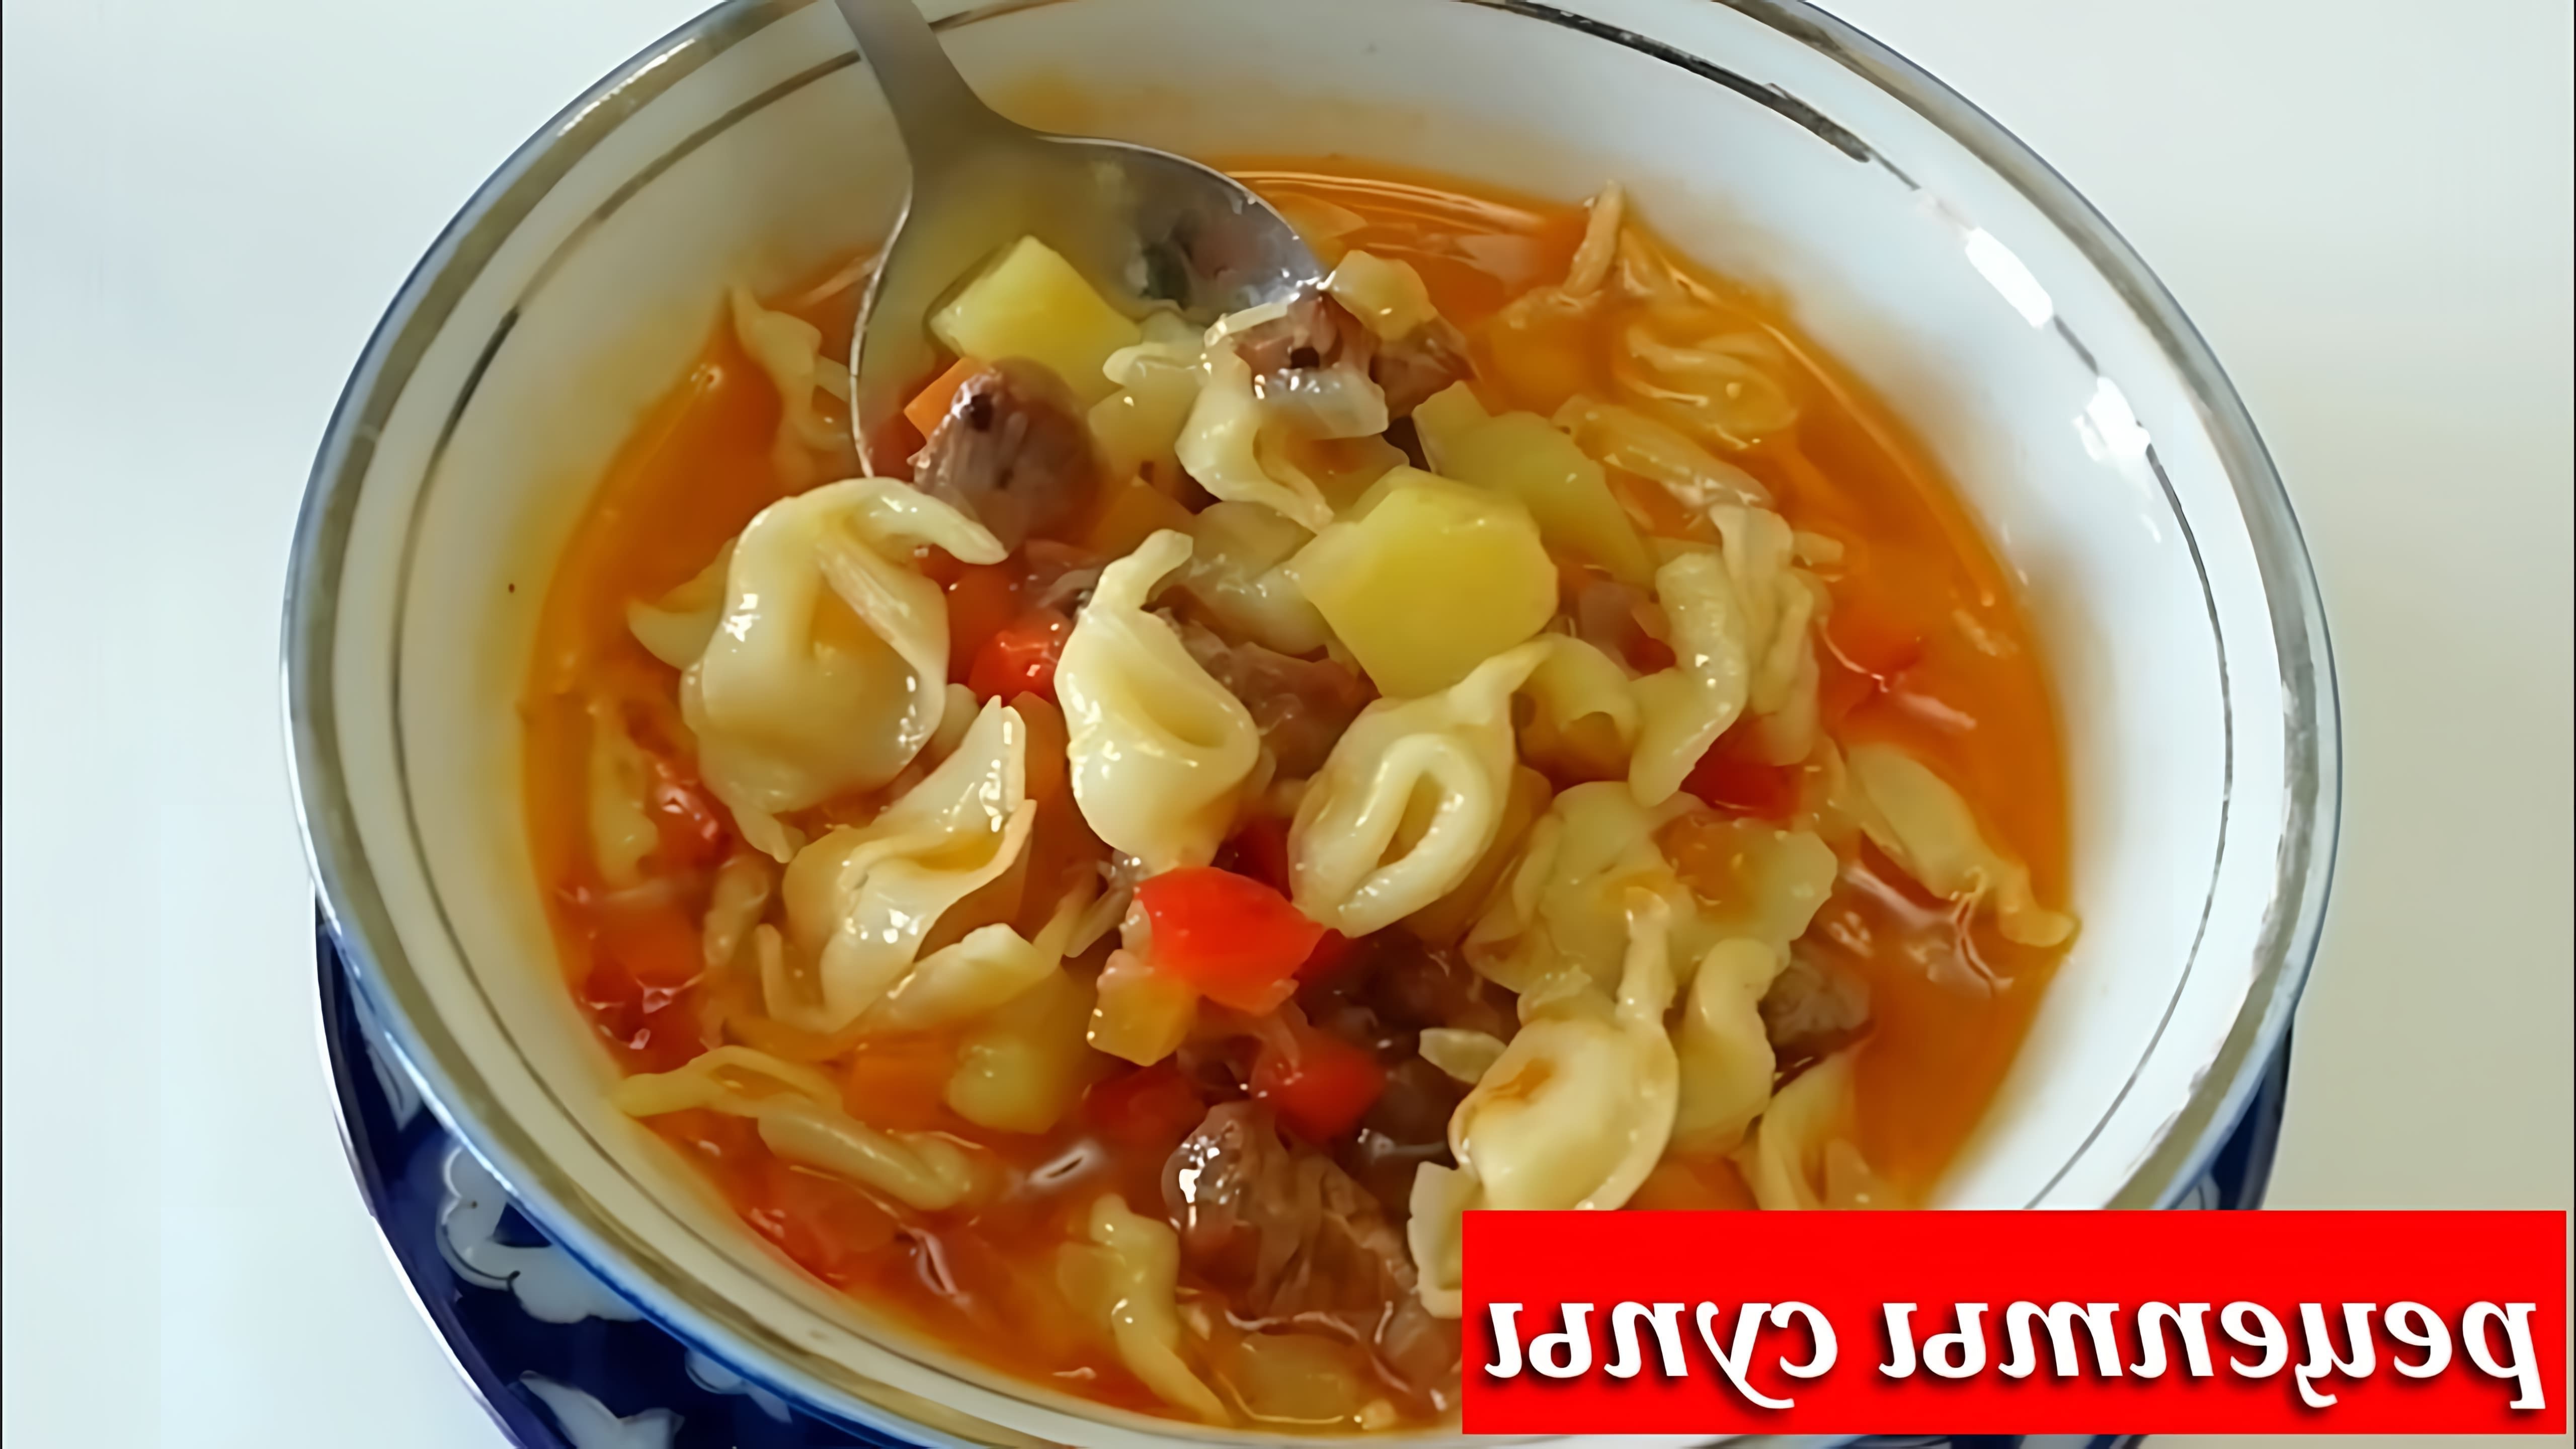 В этом видео демонстрируется рецепт приготовления быстрого узбекского супа